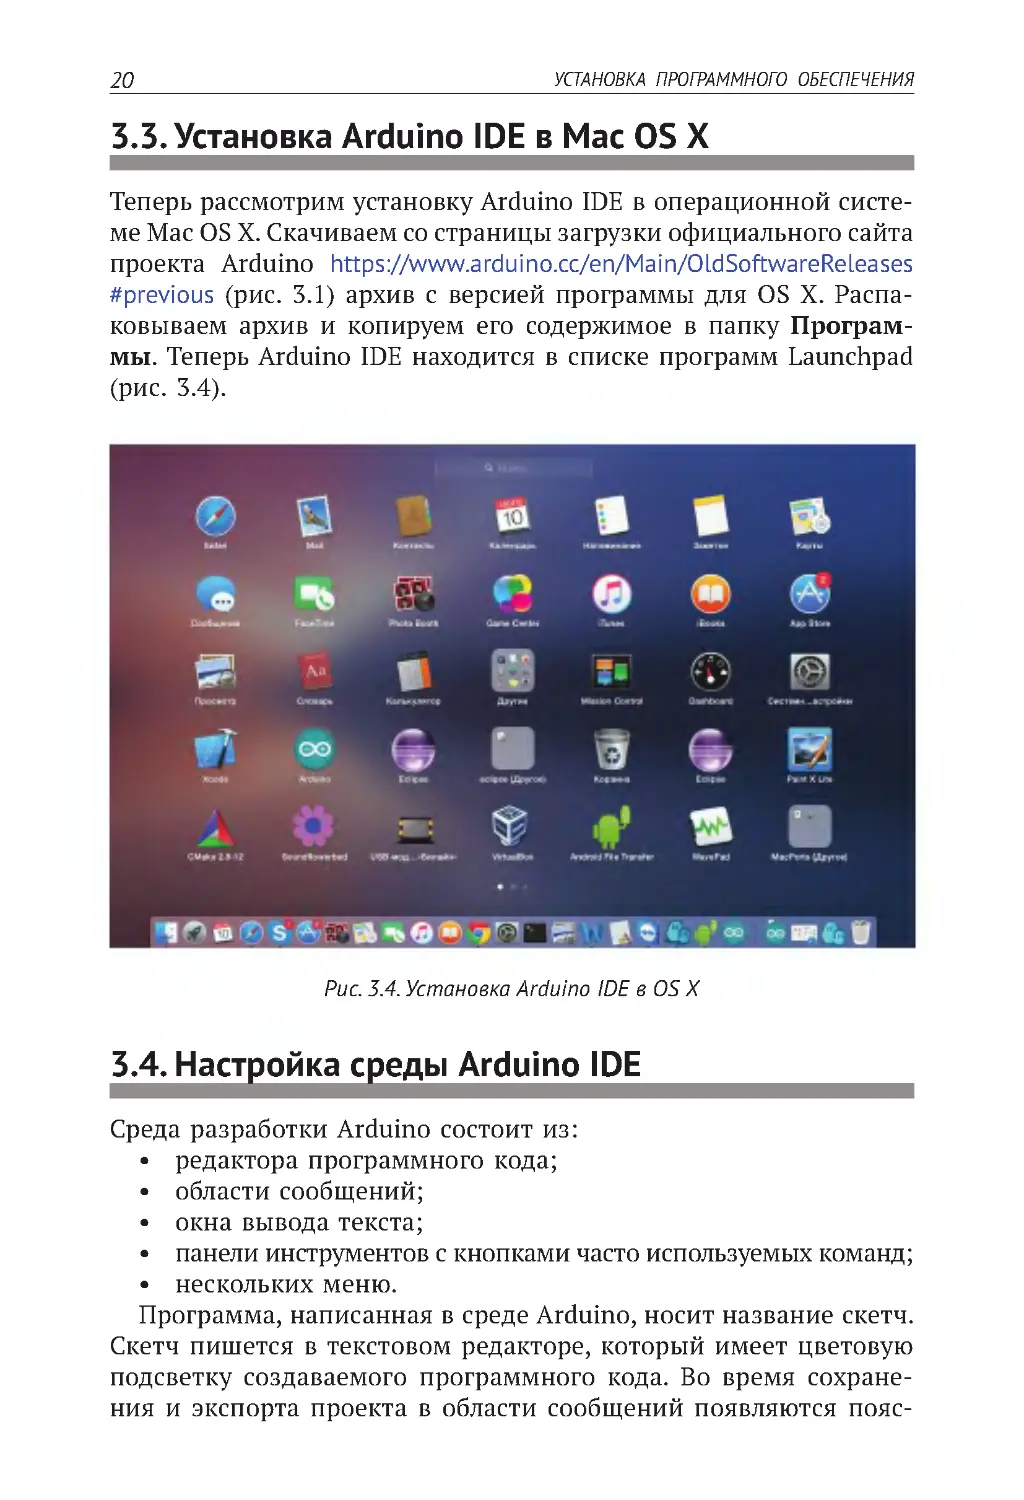 3.3. Установка Arduino IDE в Mac OS X
3.4. Настройка среды Arduino IDE